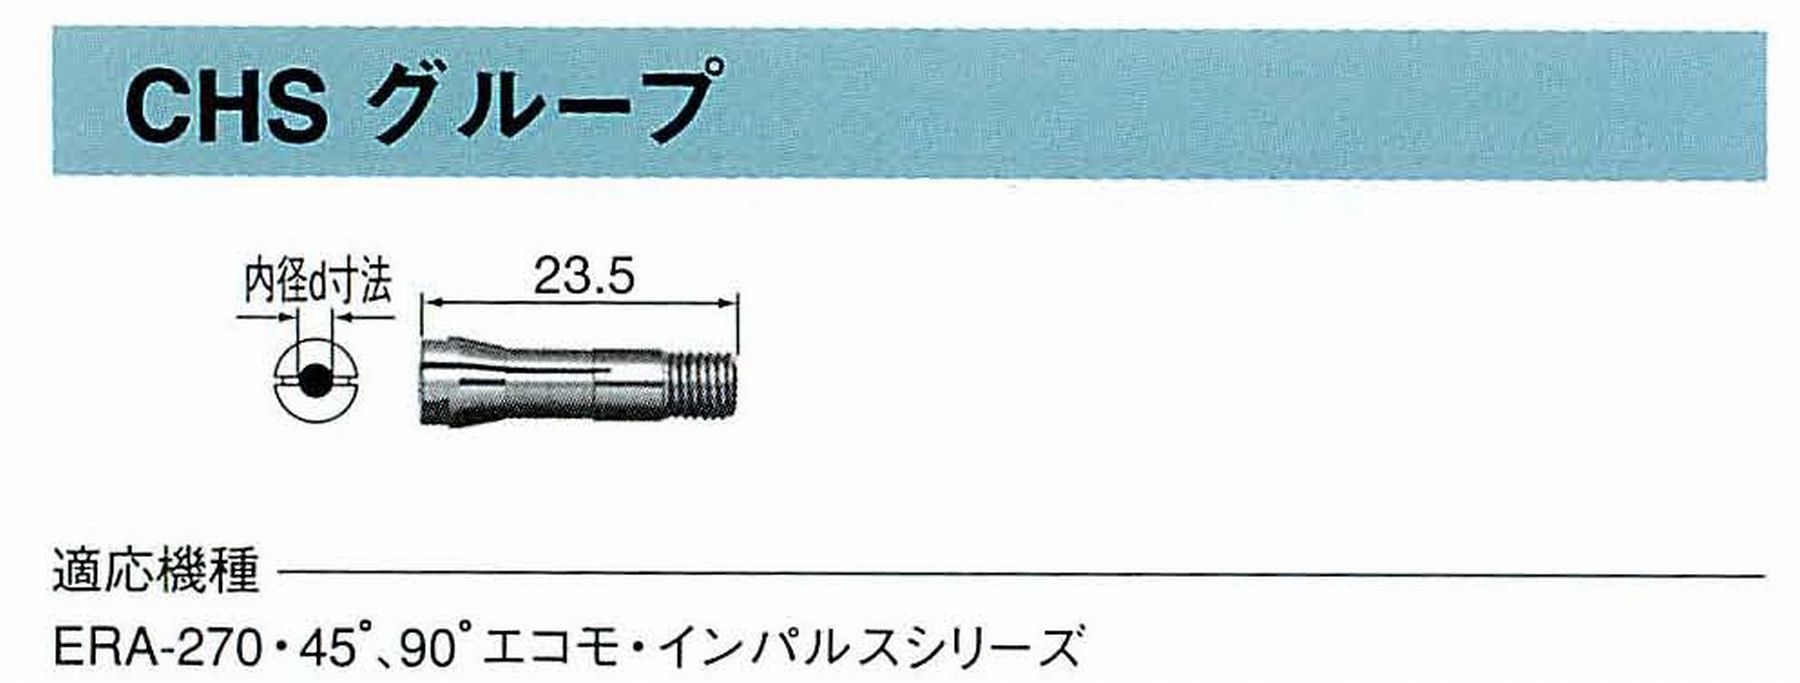 ナカニシ/NAKANISHI コレットチャック コード番号 90593 型式 CHS-3.175 内径:Φ3.175